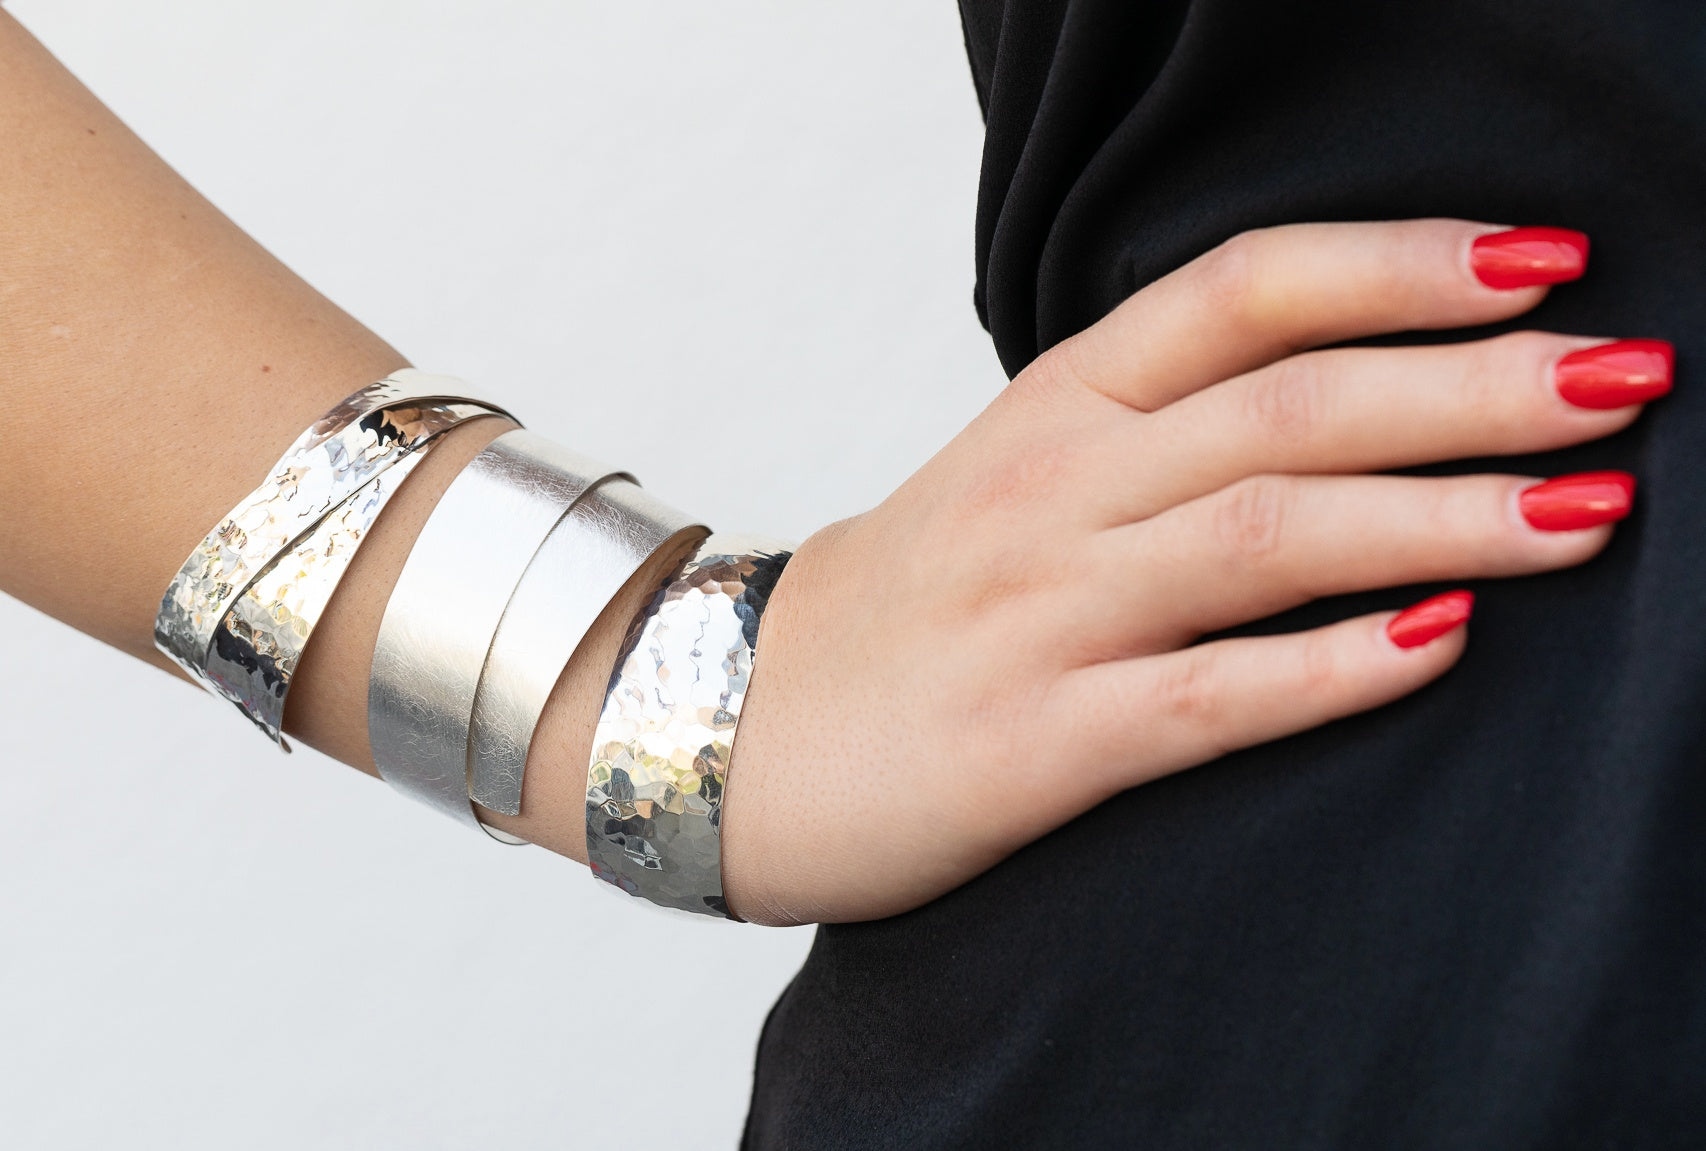 Gehämmerter Armreif aus Silber für Damen mit zwei diagonal sich überkreuzenden Silbersträngen, die kunstvoll verlötet sind, getragen am Handgelenk einer Dame.